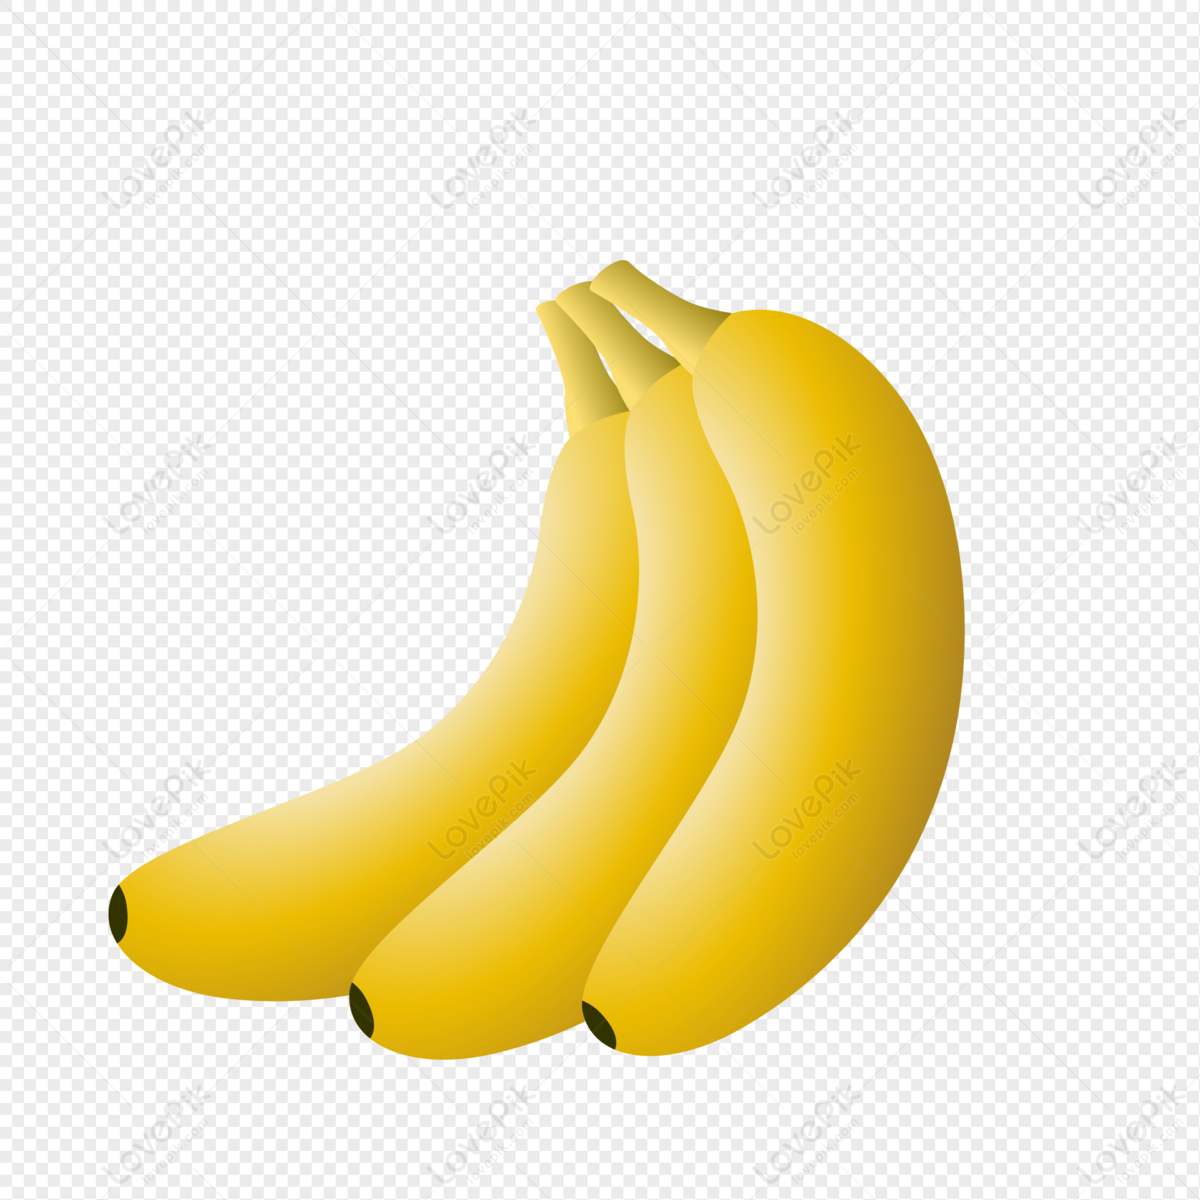 Banane PNG Images, Vecteurs Et Fichiers PSD